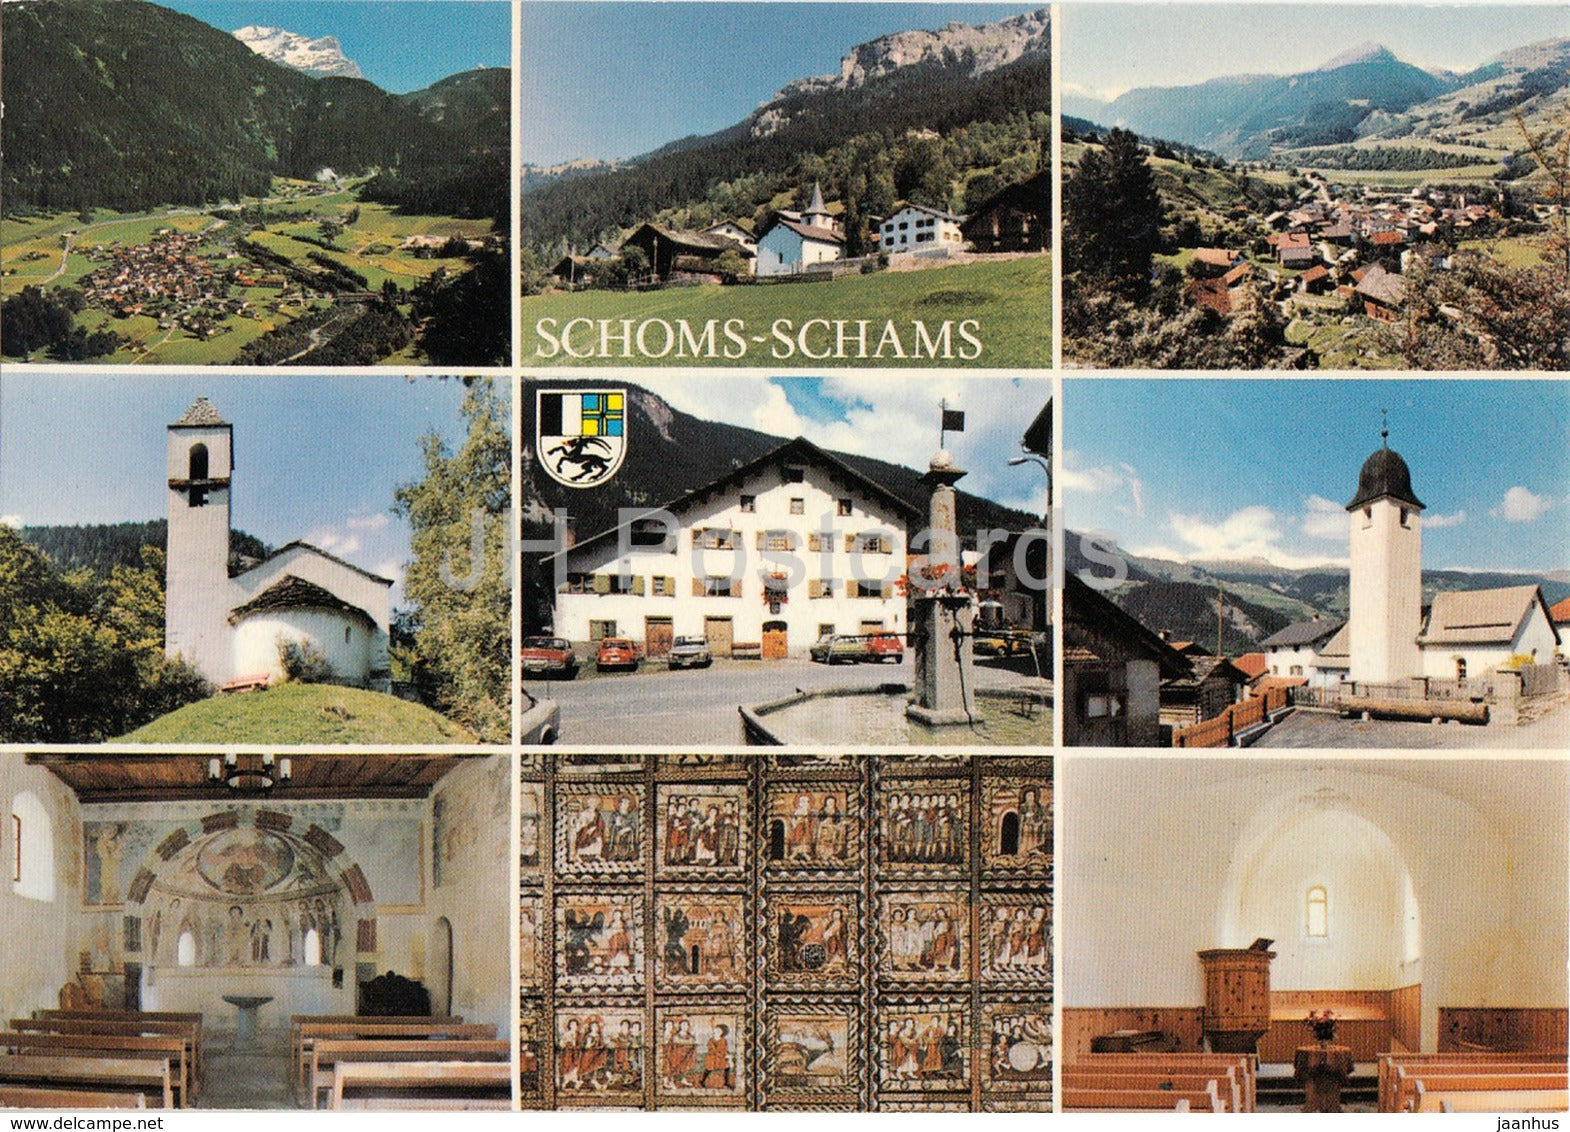 Schoms - Schams - Andeer - Reischen - Zillis - Clugin - Pignia - church - multiview - 1243 - Switzerland - unused - JH Postcards